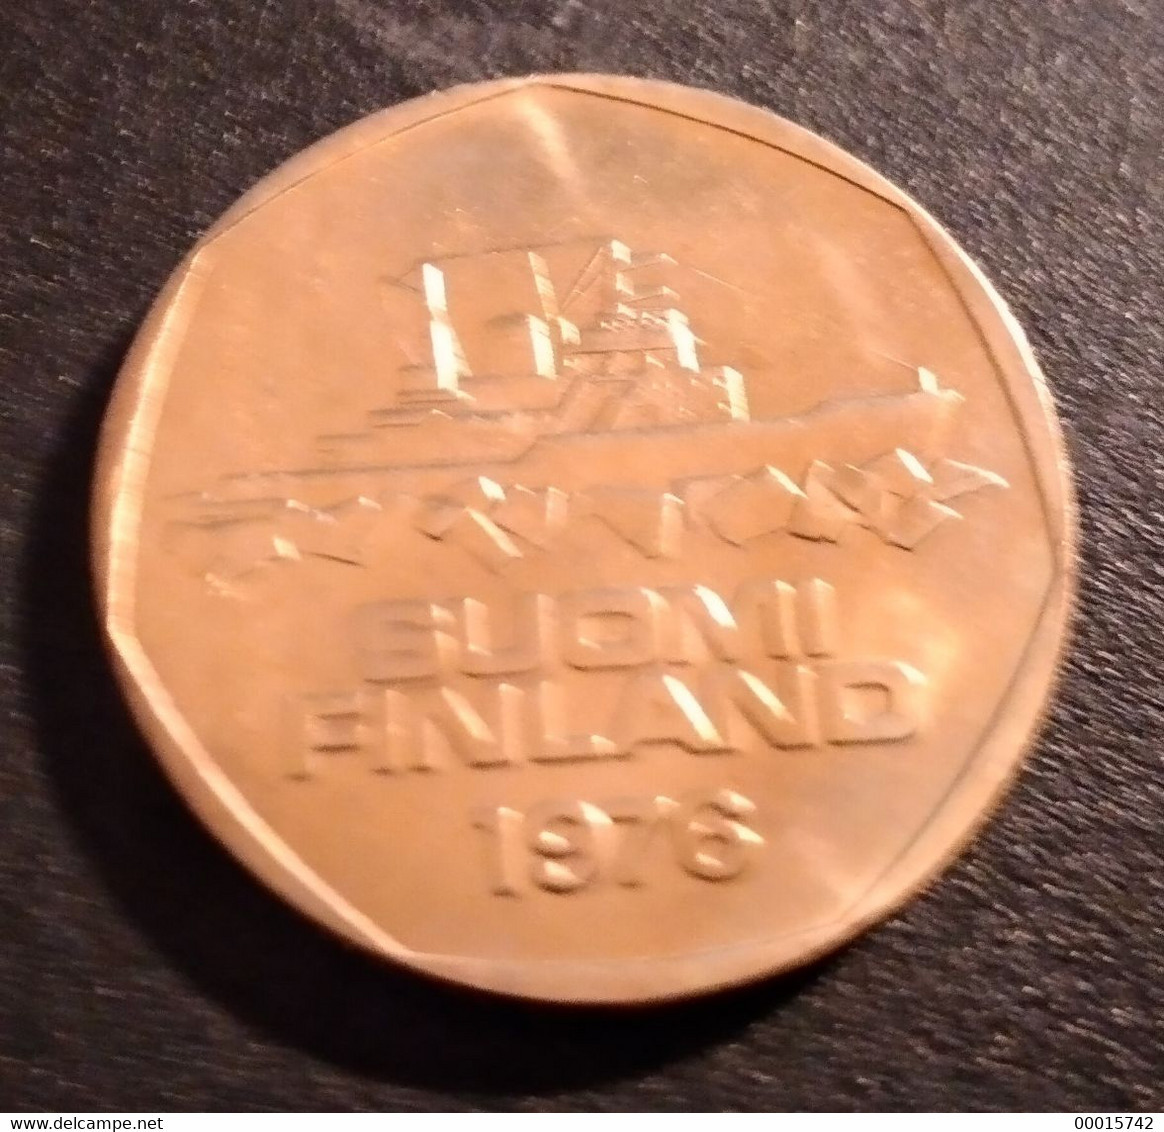 FINLAND 5 MK 1976  UNC - Finlandia